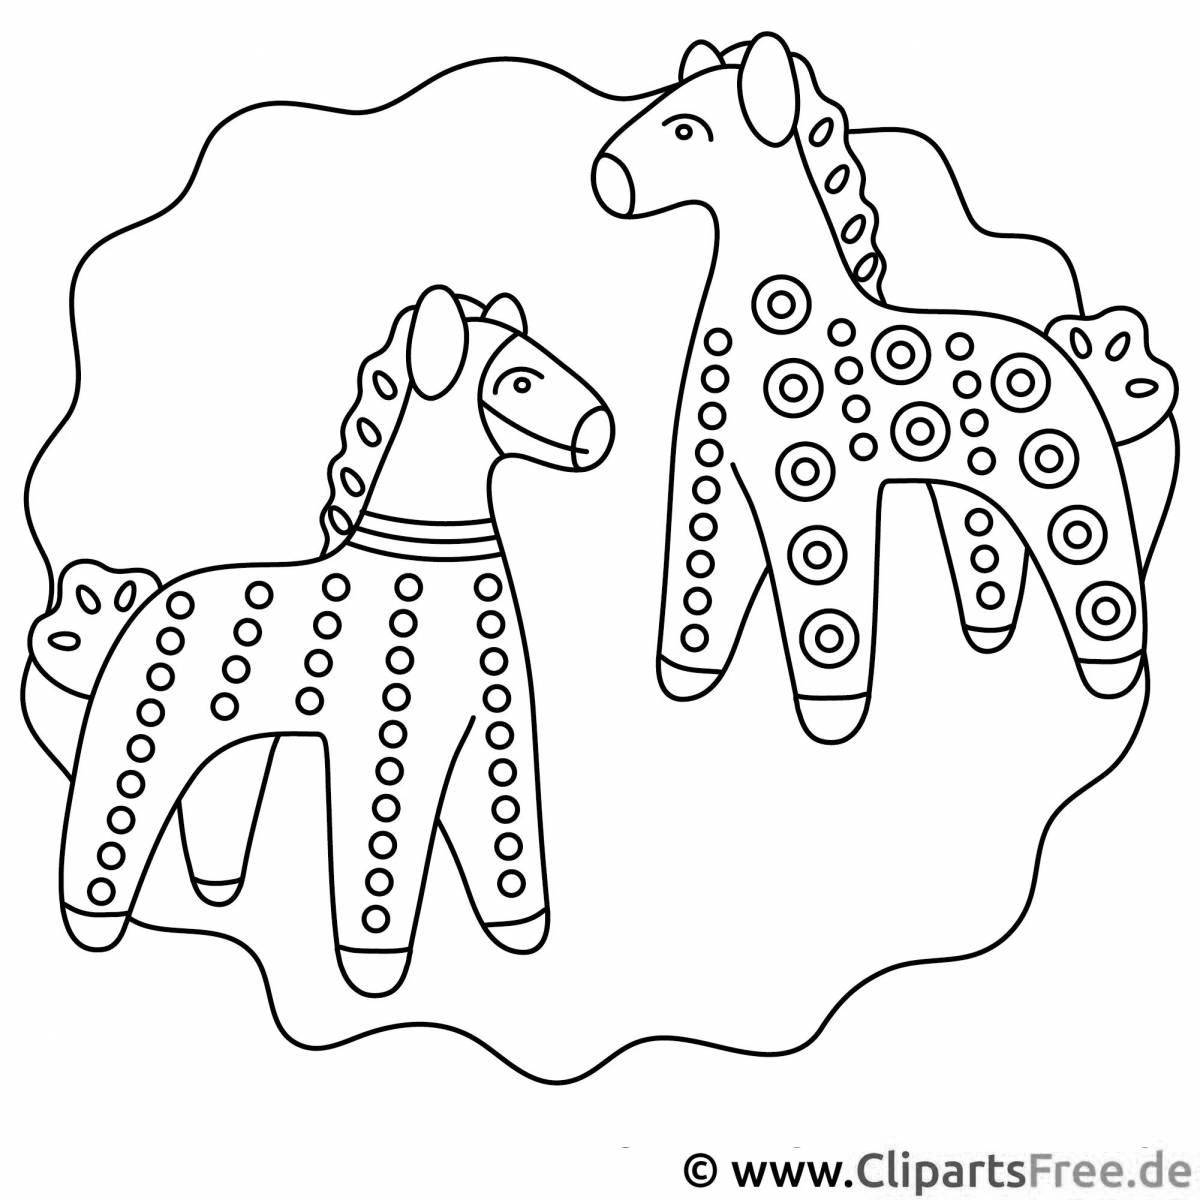 Увлекательная дымковская лошадь раскраска для детей